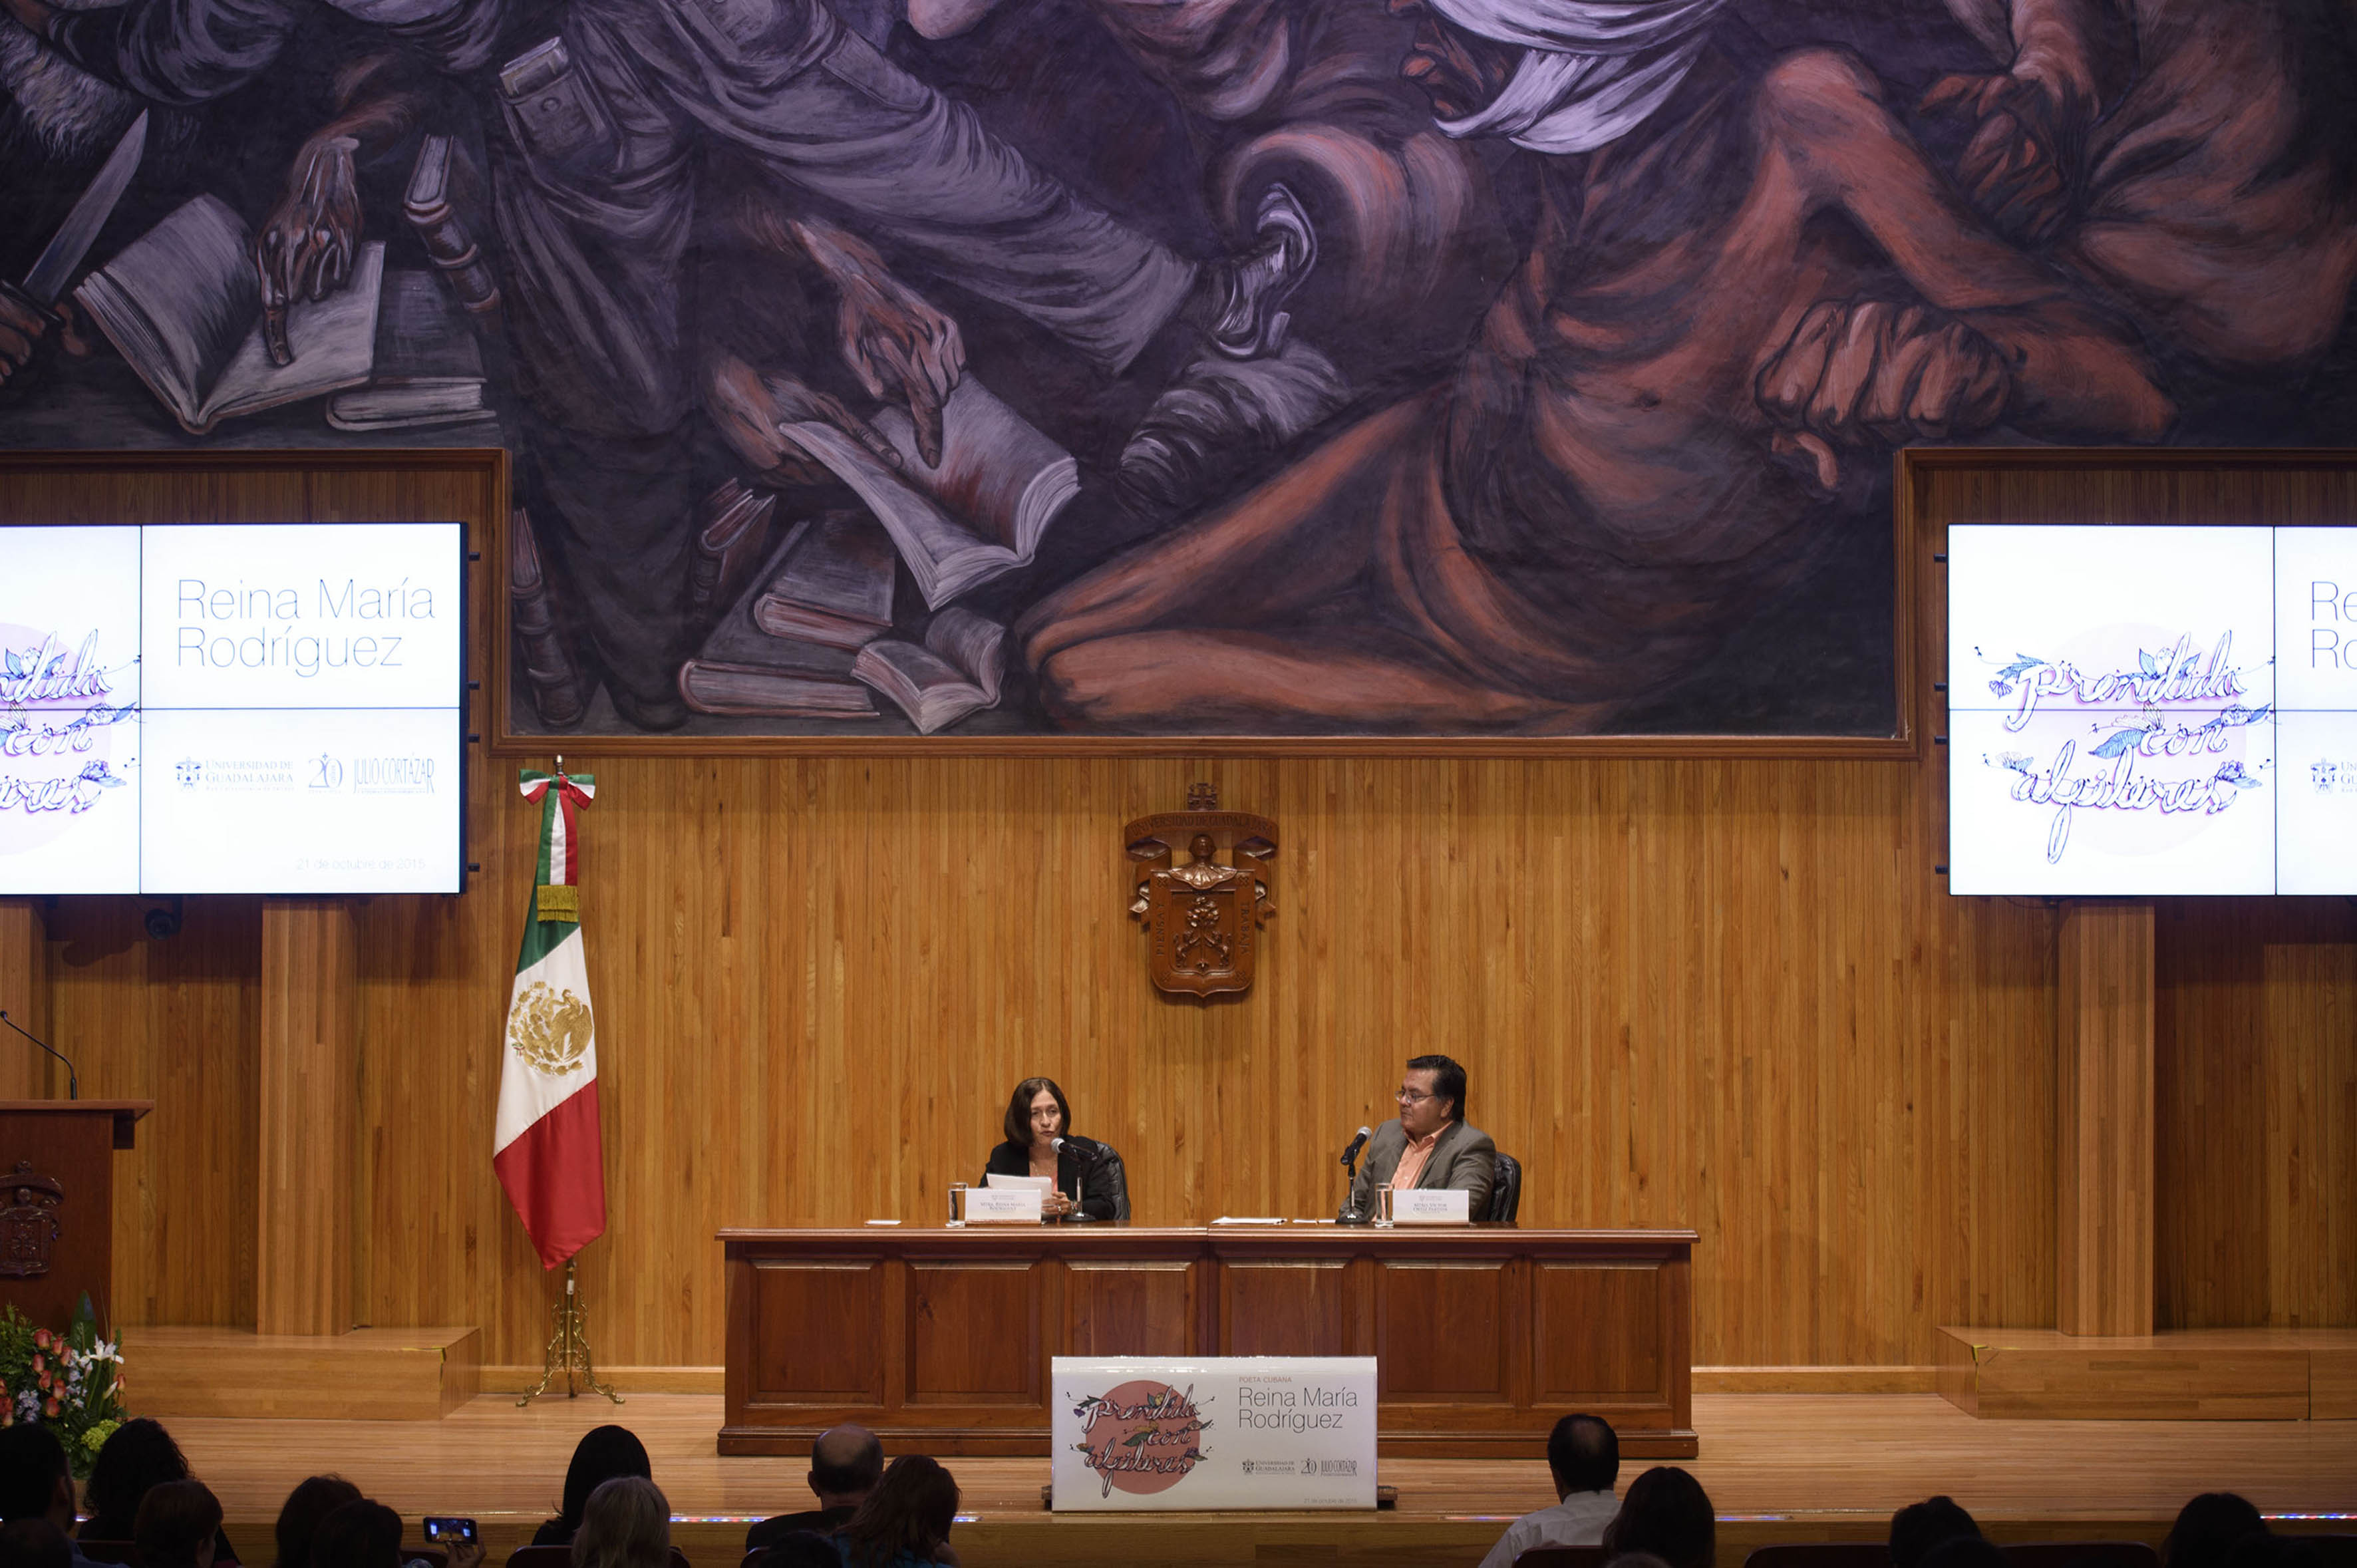 Mtra. Reina María Rodríguez impartiendo conferencia en el paraninfo universitario